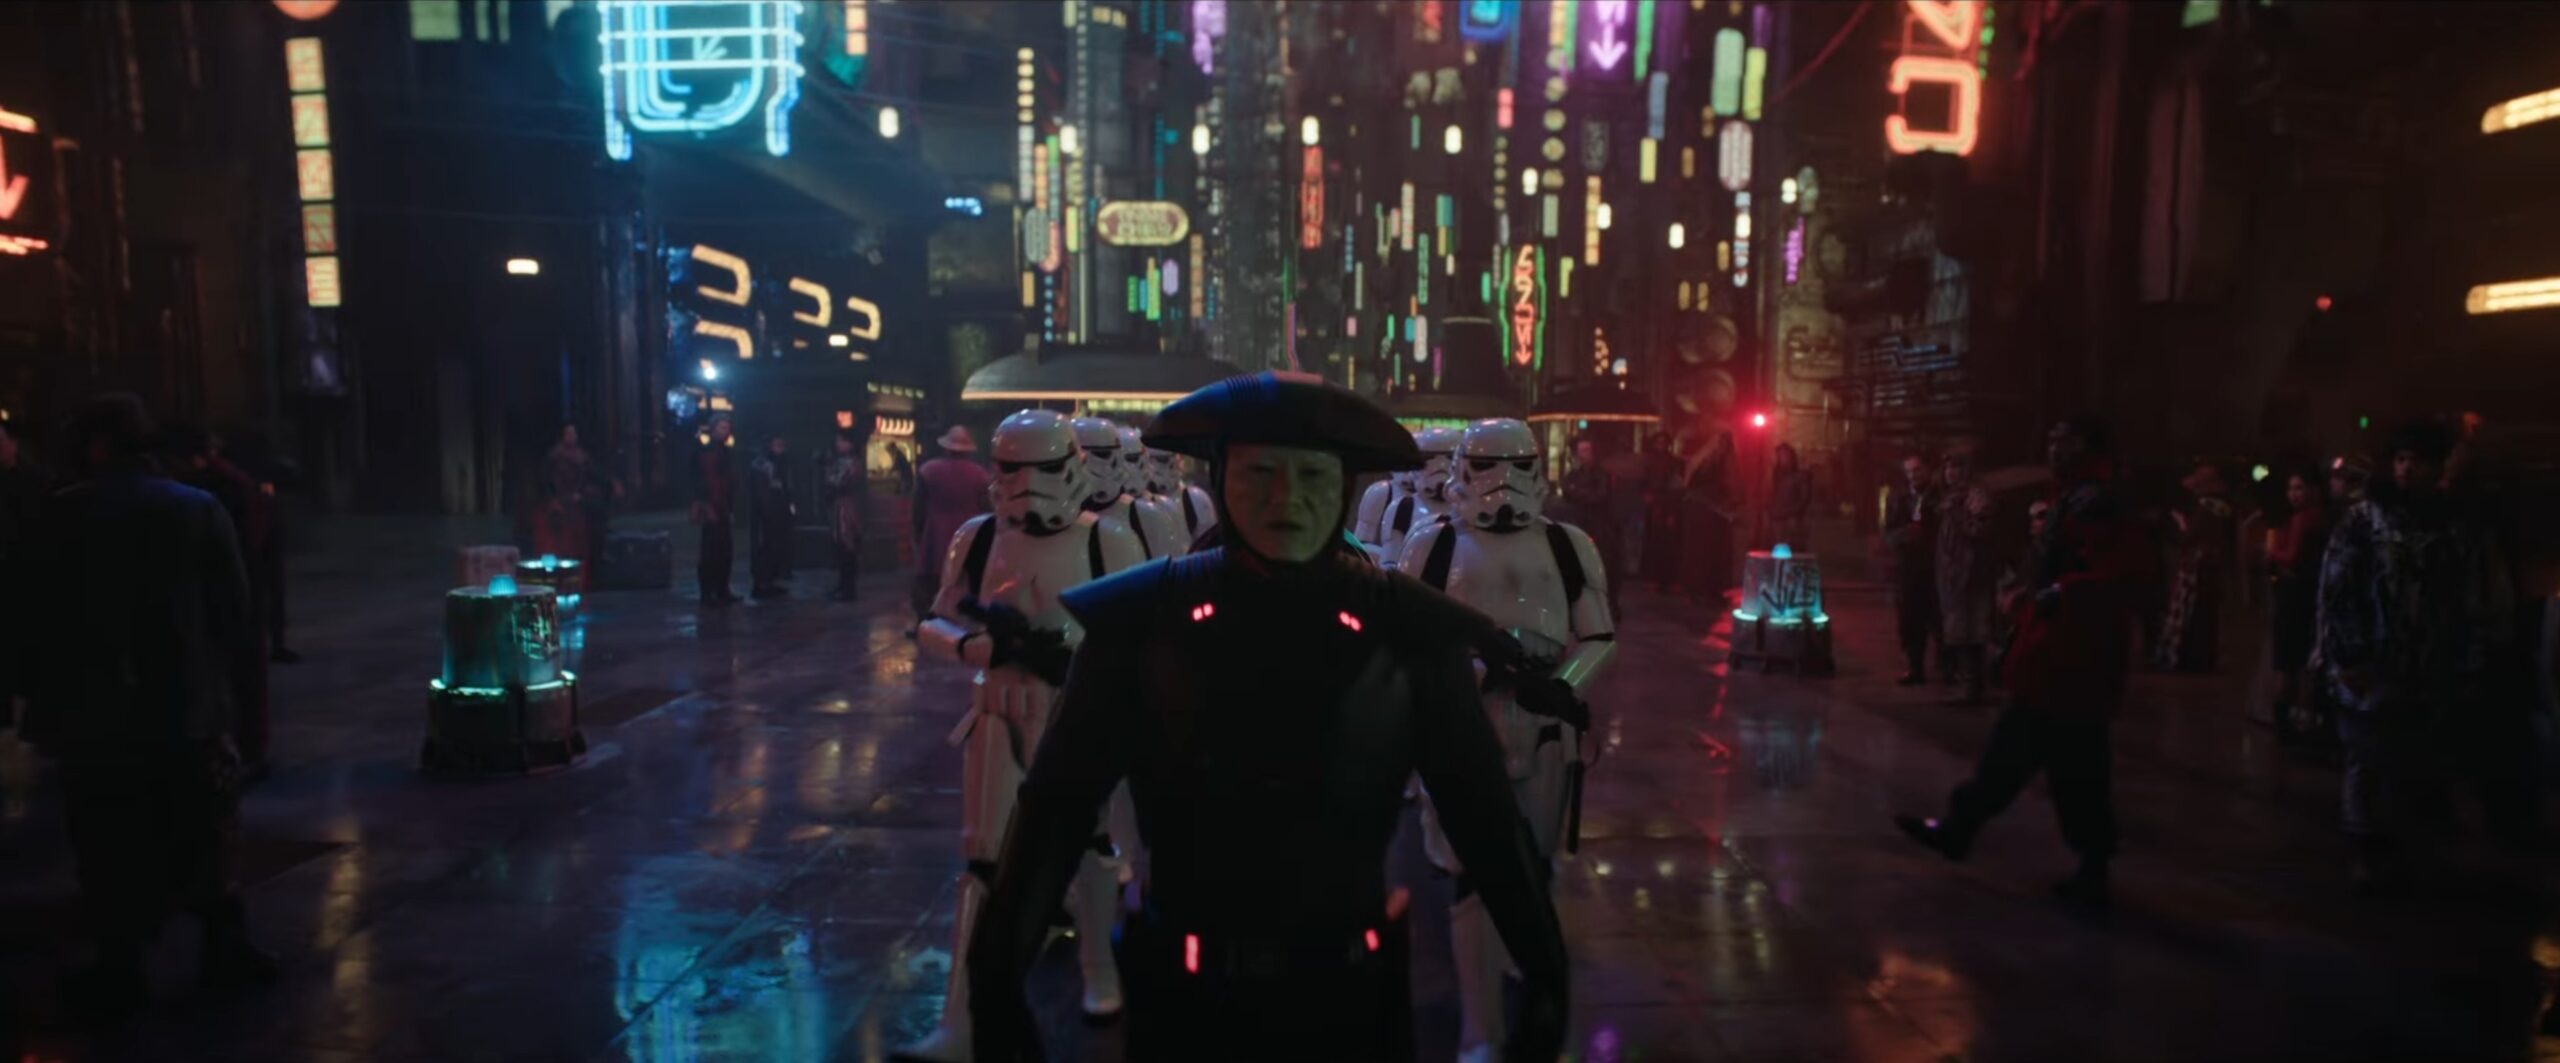 Obi-Wan Kenobi Teaser Trailer Released